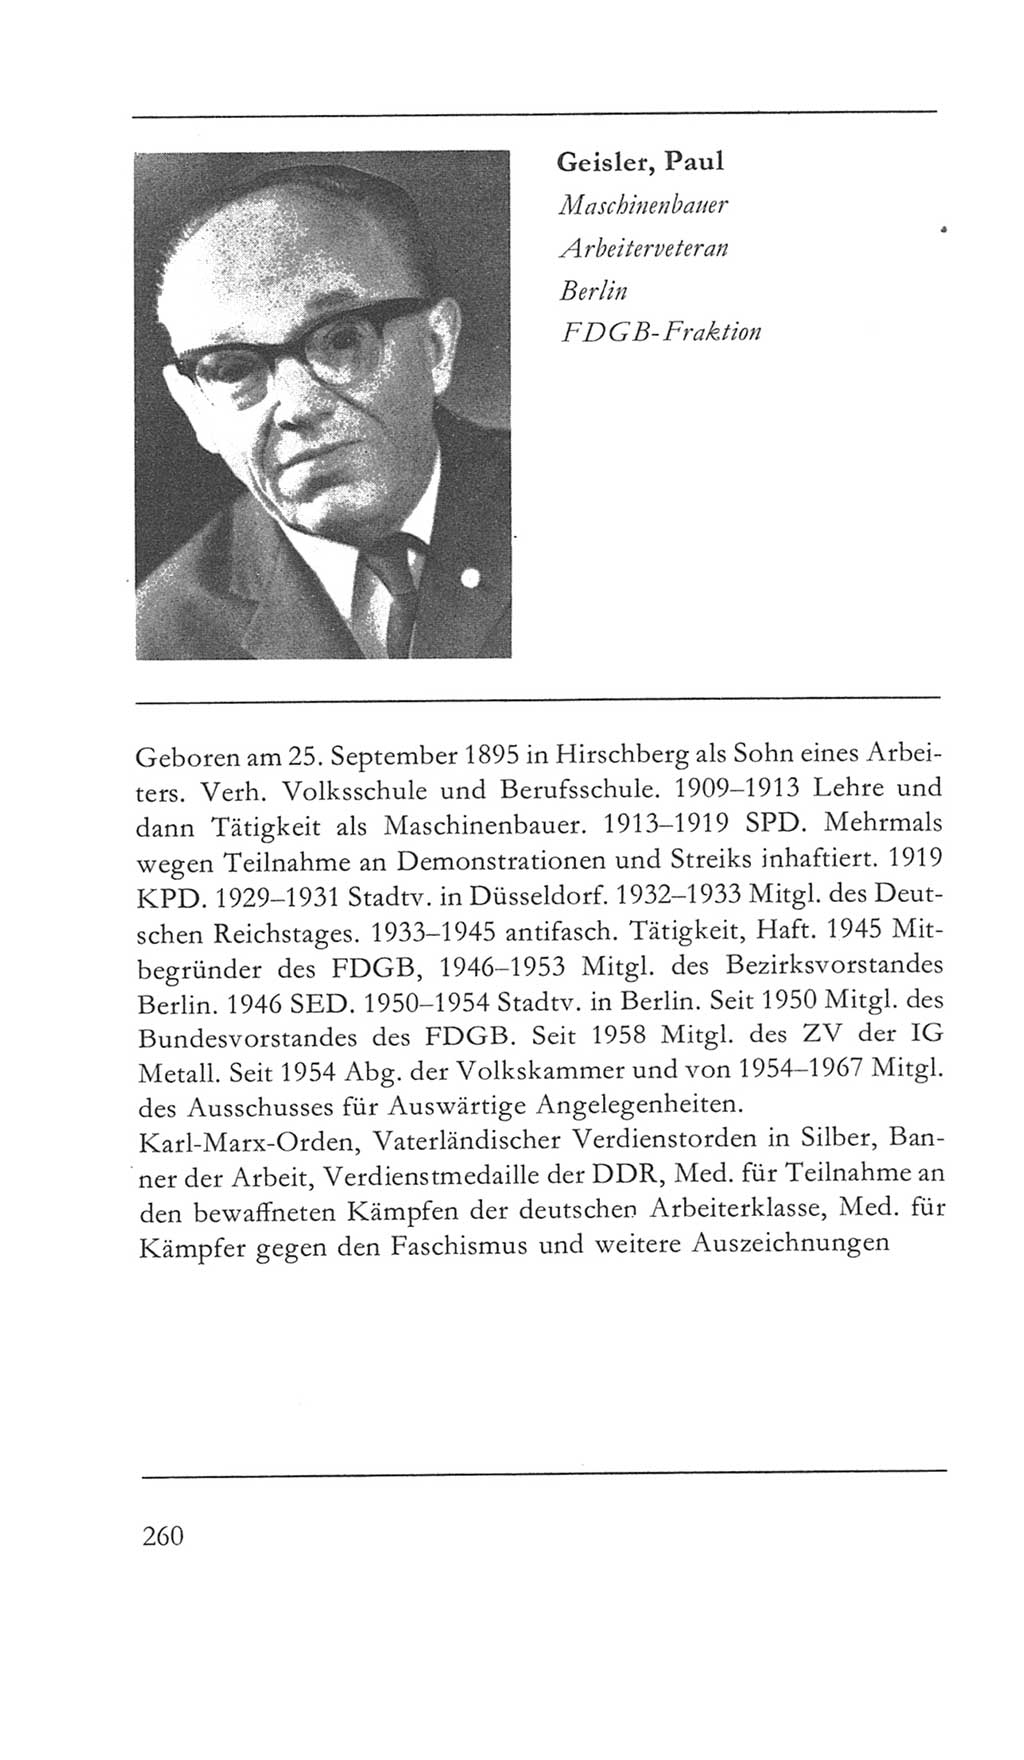 Volkskammer (VK) der Deutschen Demokratischen Republik (DDR) 5. Wahlperiode 1967-1971, Seite 260 (VK. DDR 5. WP. 1967-1971, S. 260)